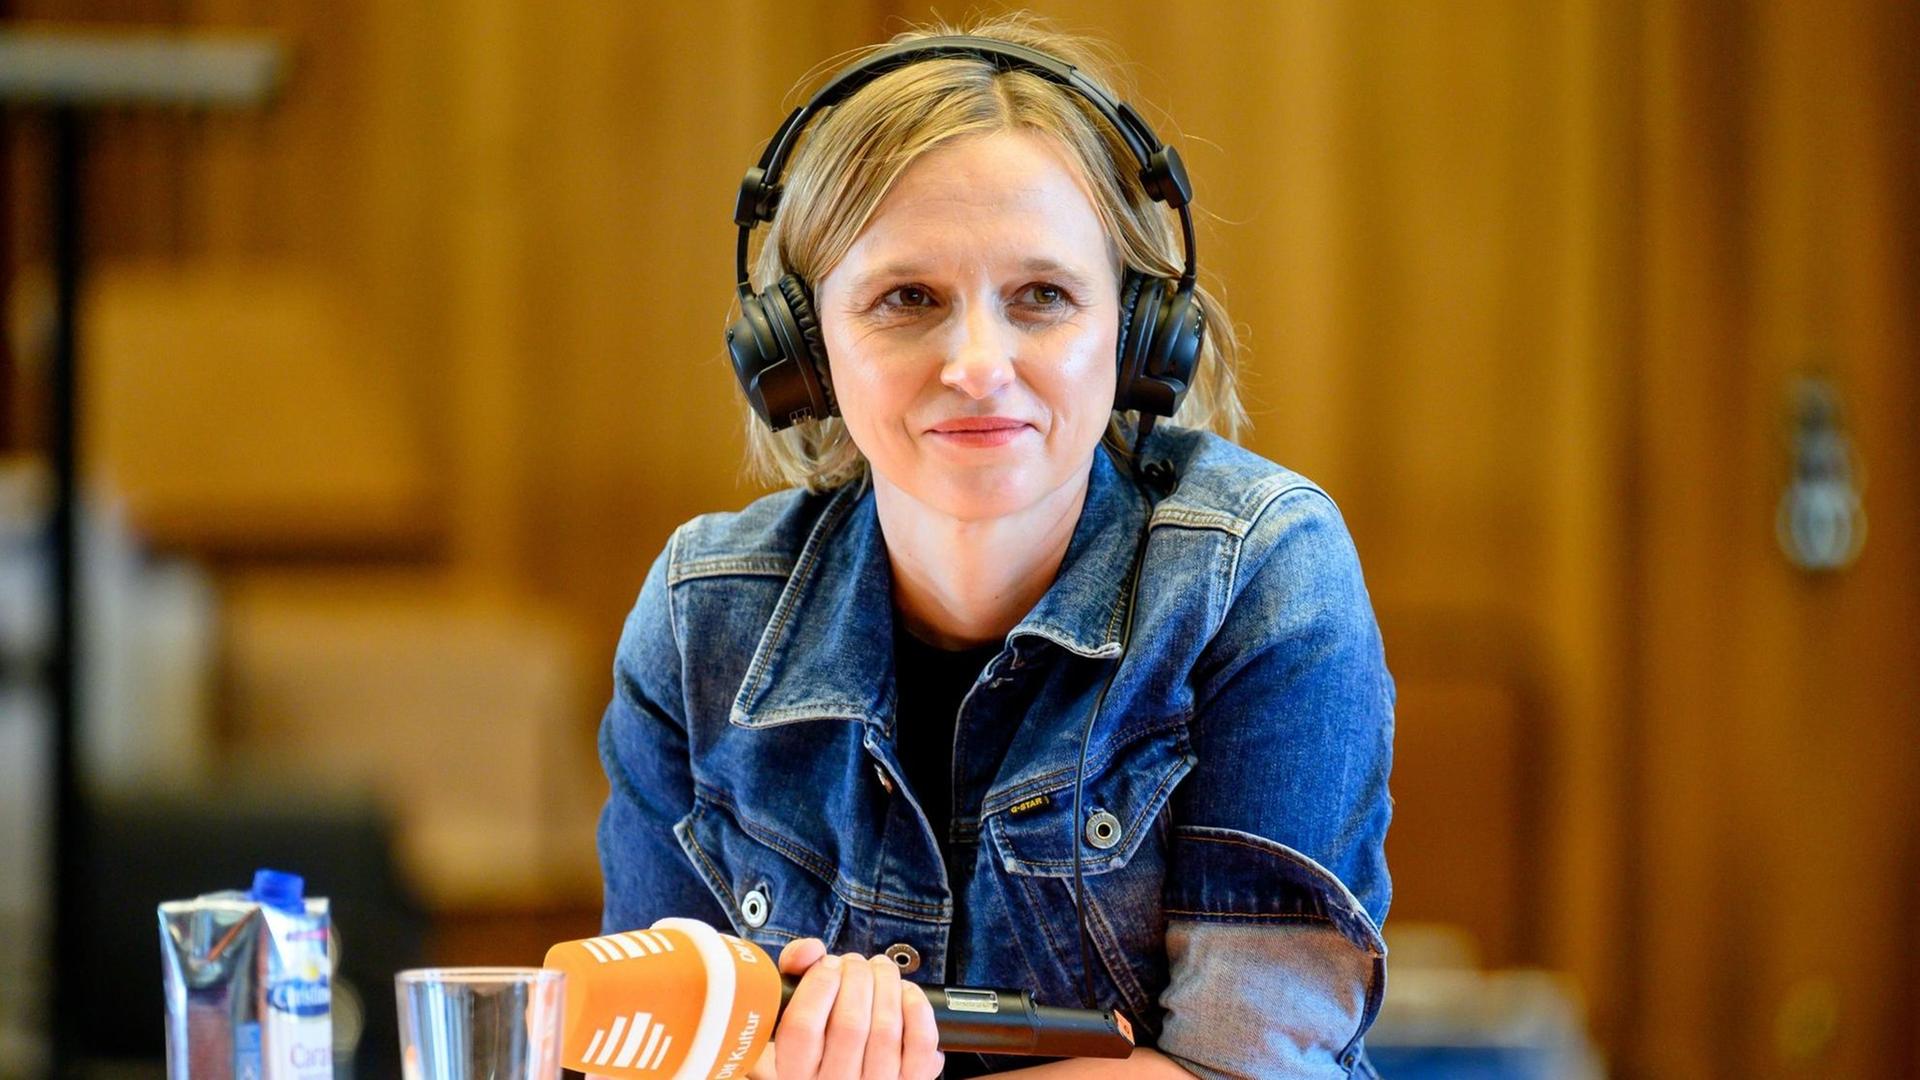 Das Bild zeigt eine junge Frau mit Mikrofon und Kopfhörern, die an einem Tisch sitzt und lächelt.